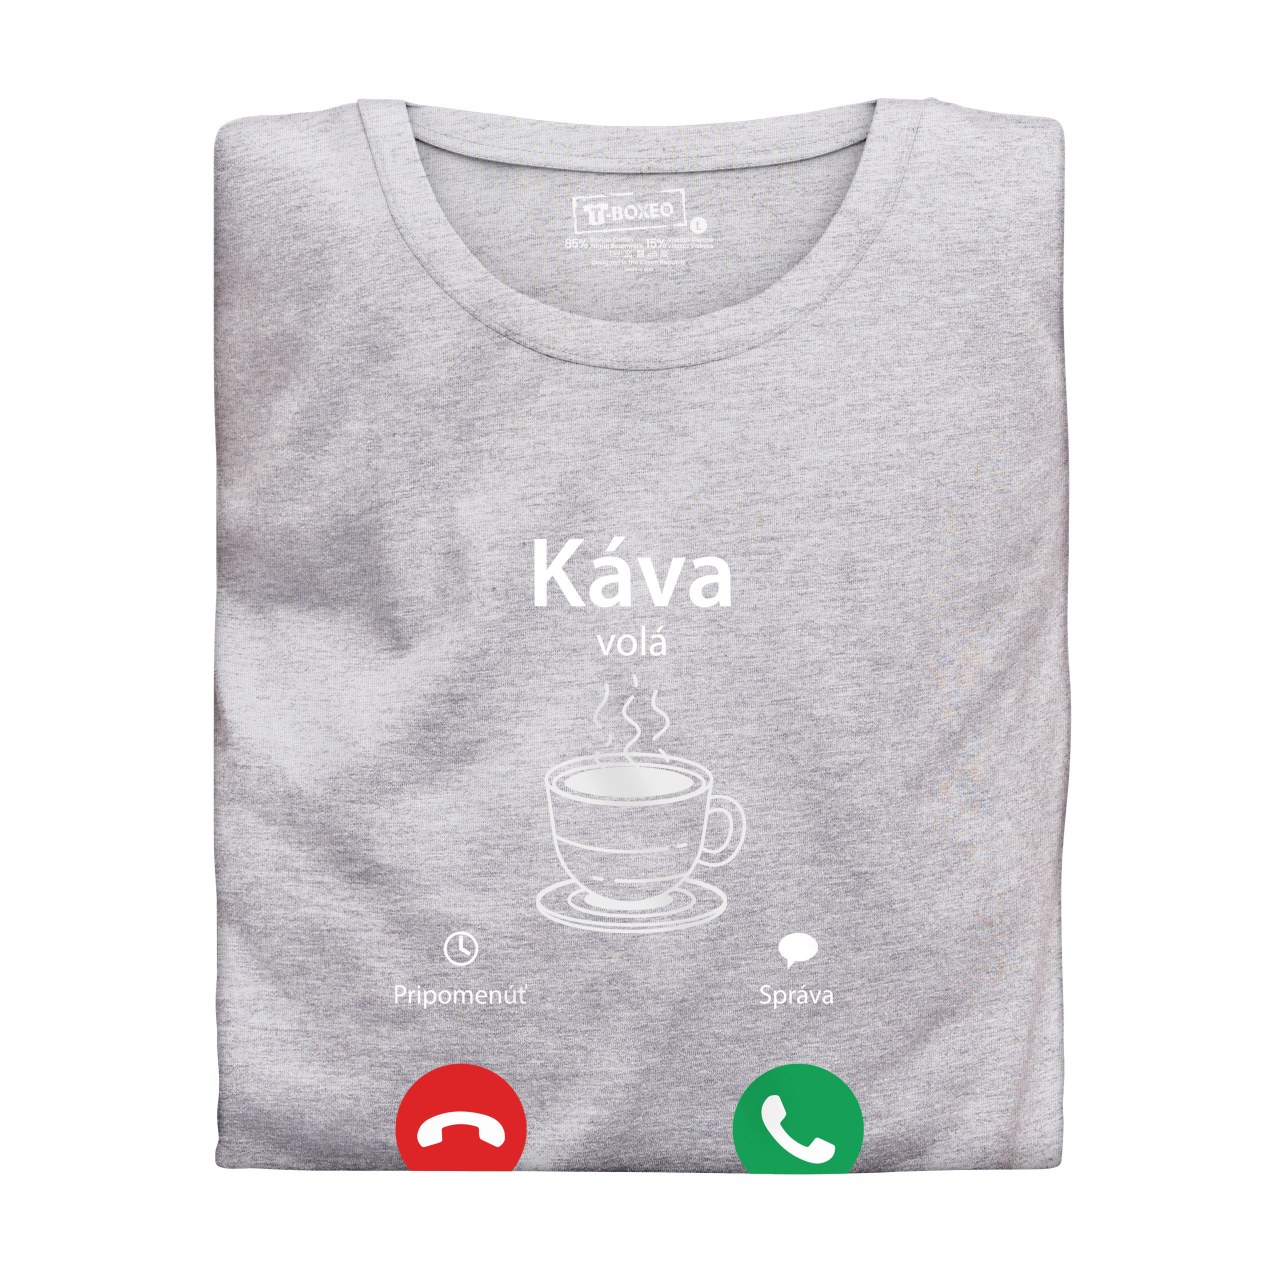 Dámské tričko s potiskem "Káva volá" SK